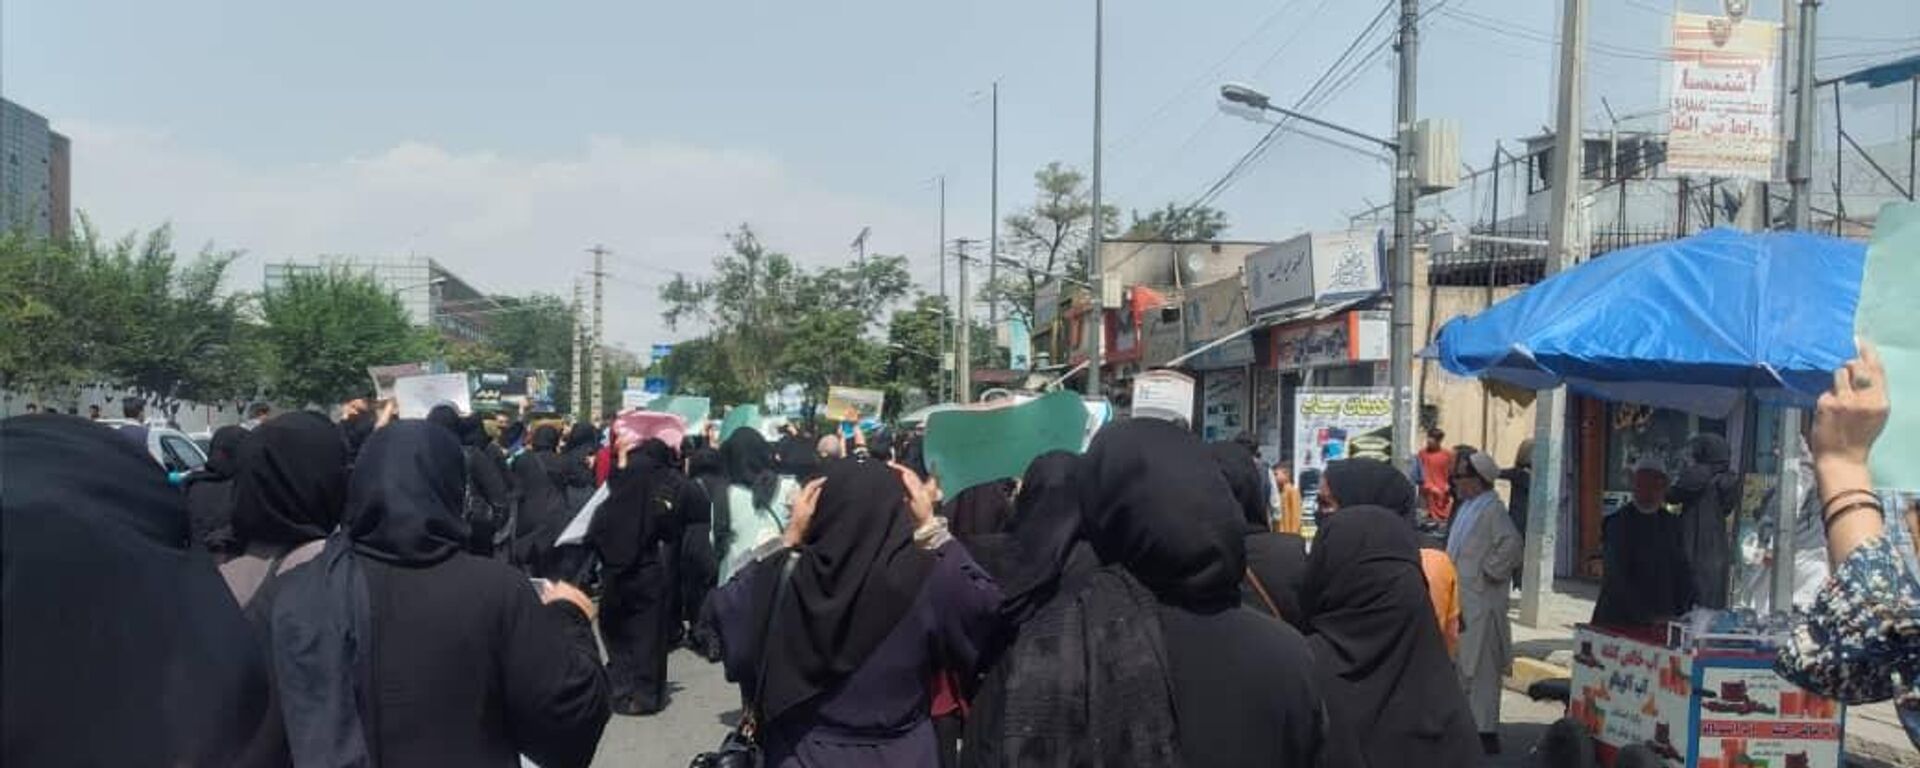   اعتراض زنان در کابل با گلوله طالبان پاسخ داده شد   - اسپوتنیک افغانستان  , 1920, 31.10.2022